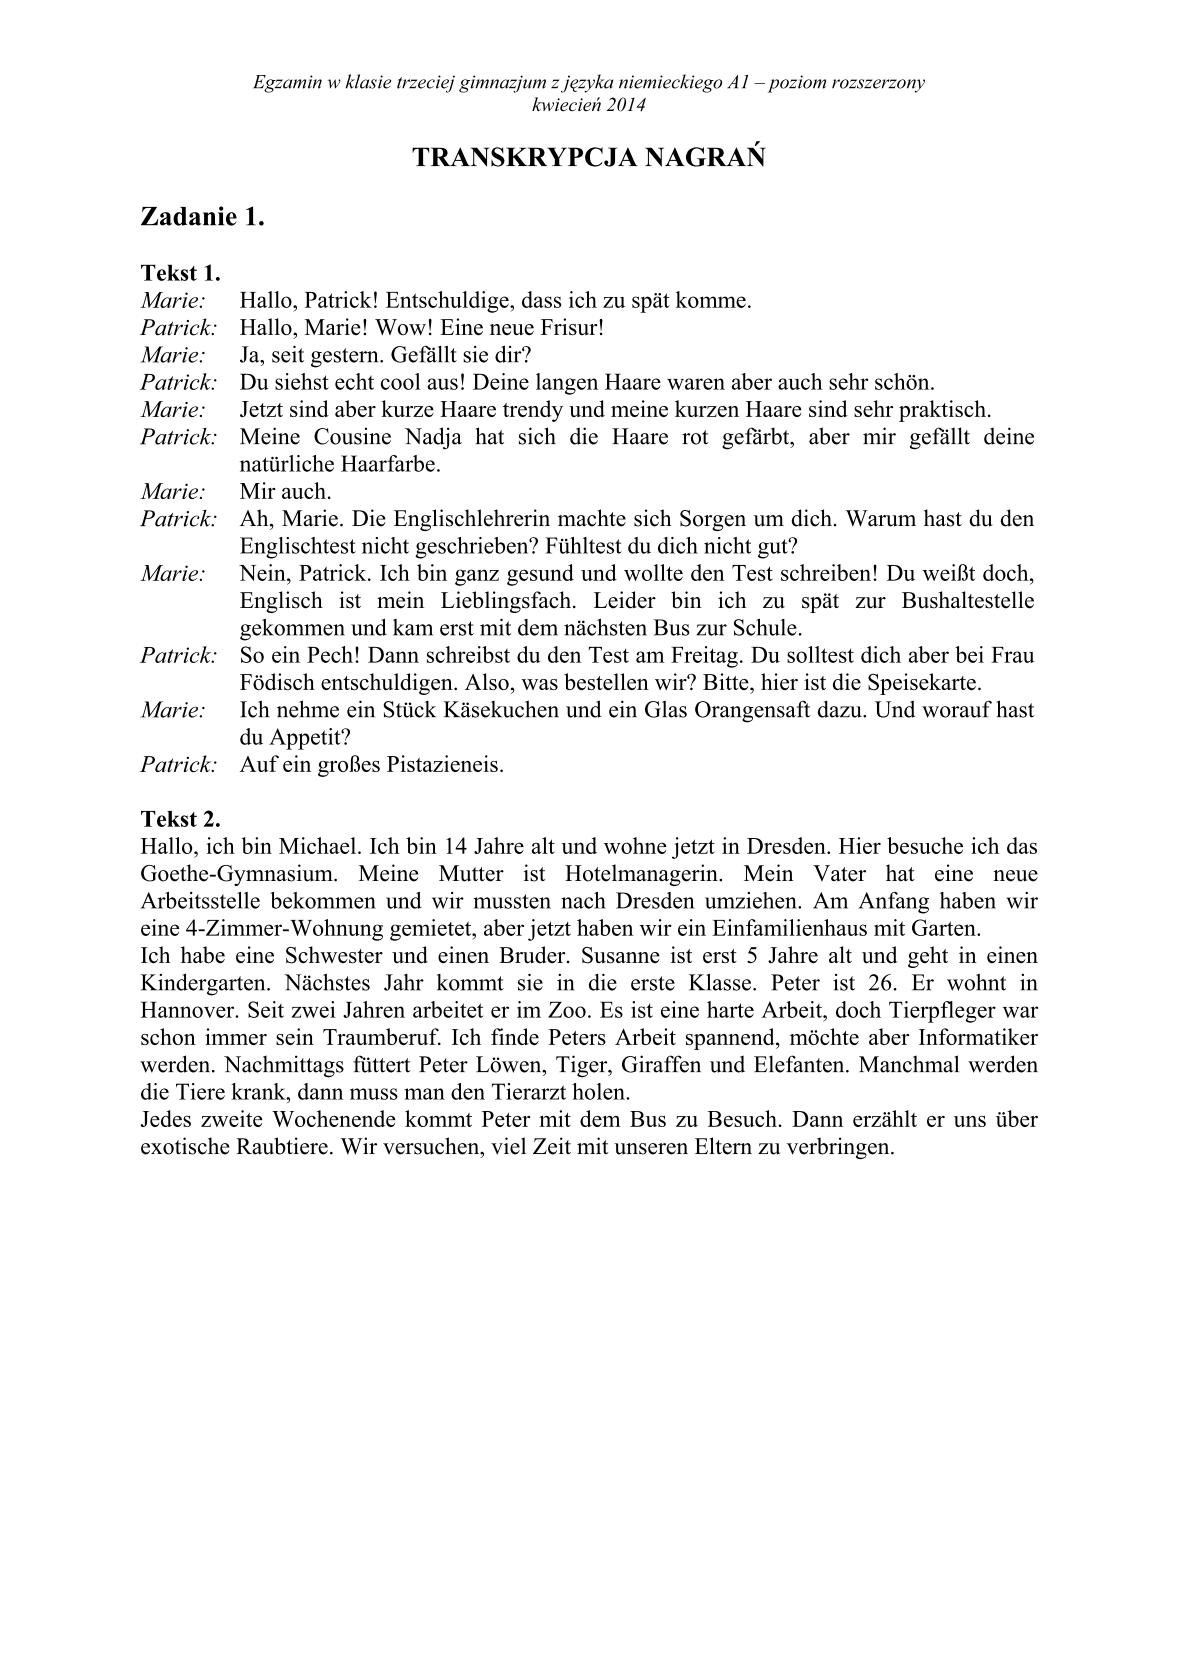 transkrypcja-niemiecki-poziom-rozszerzony-egzamin-gimnazjalny-25.04.2014-1